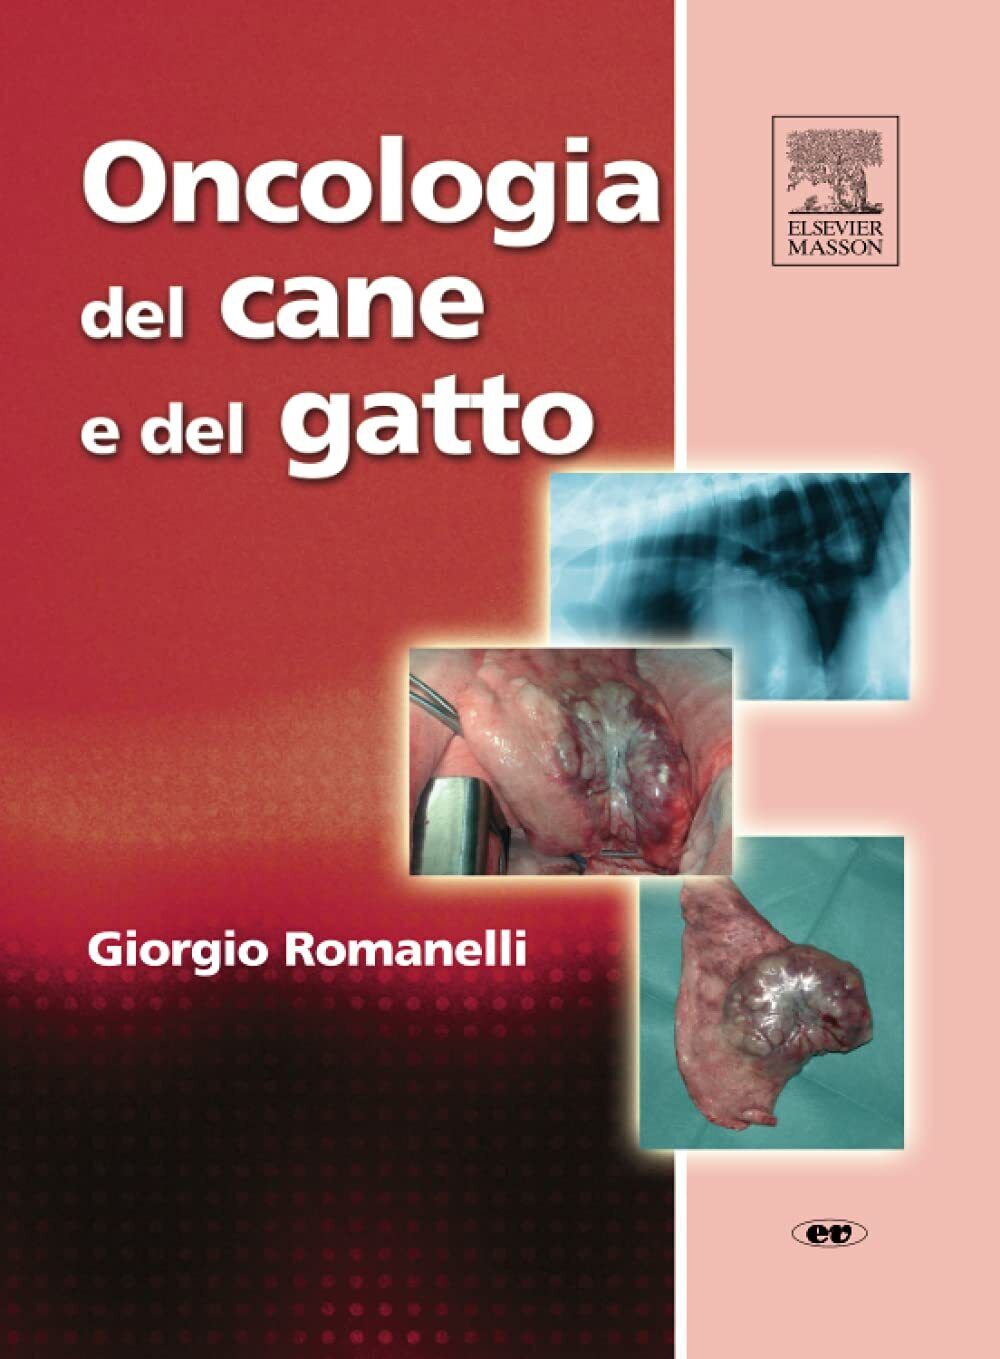 Oncologia del cane e del gatto - Giorgio Romanelli - Elsevier, 2007